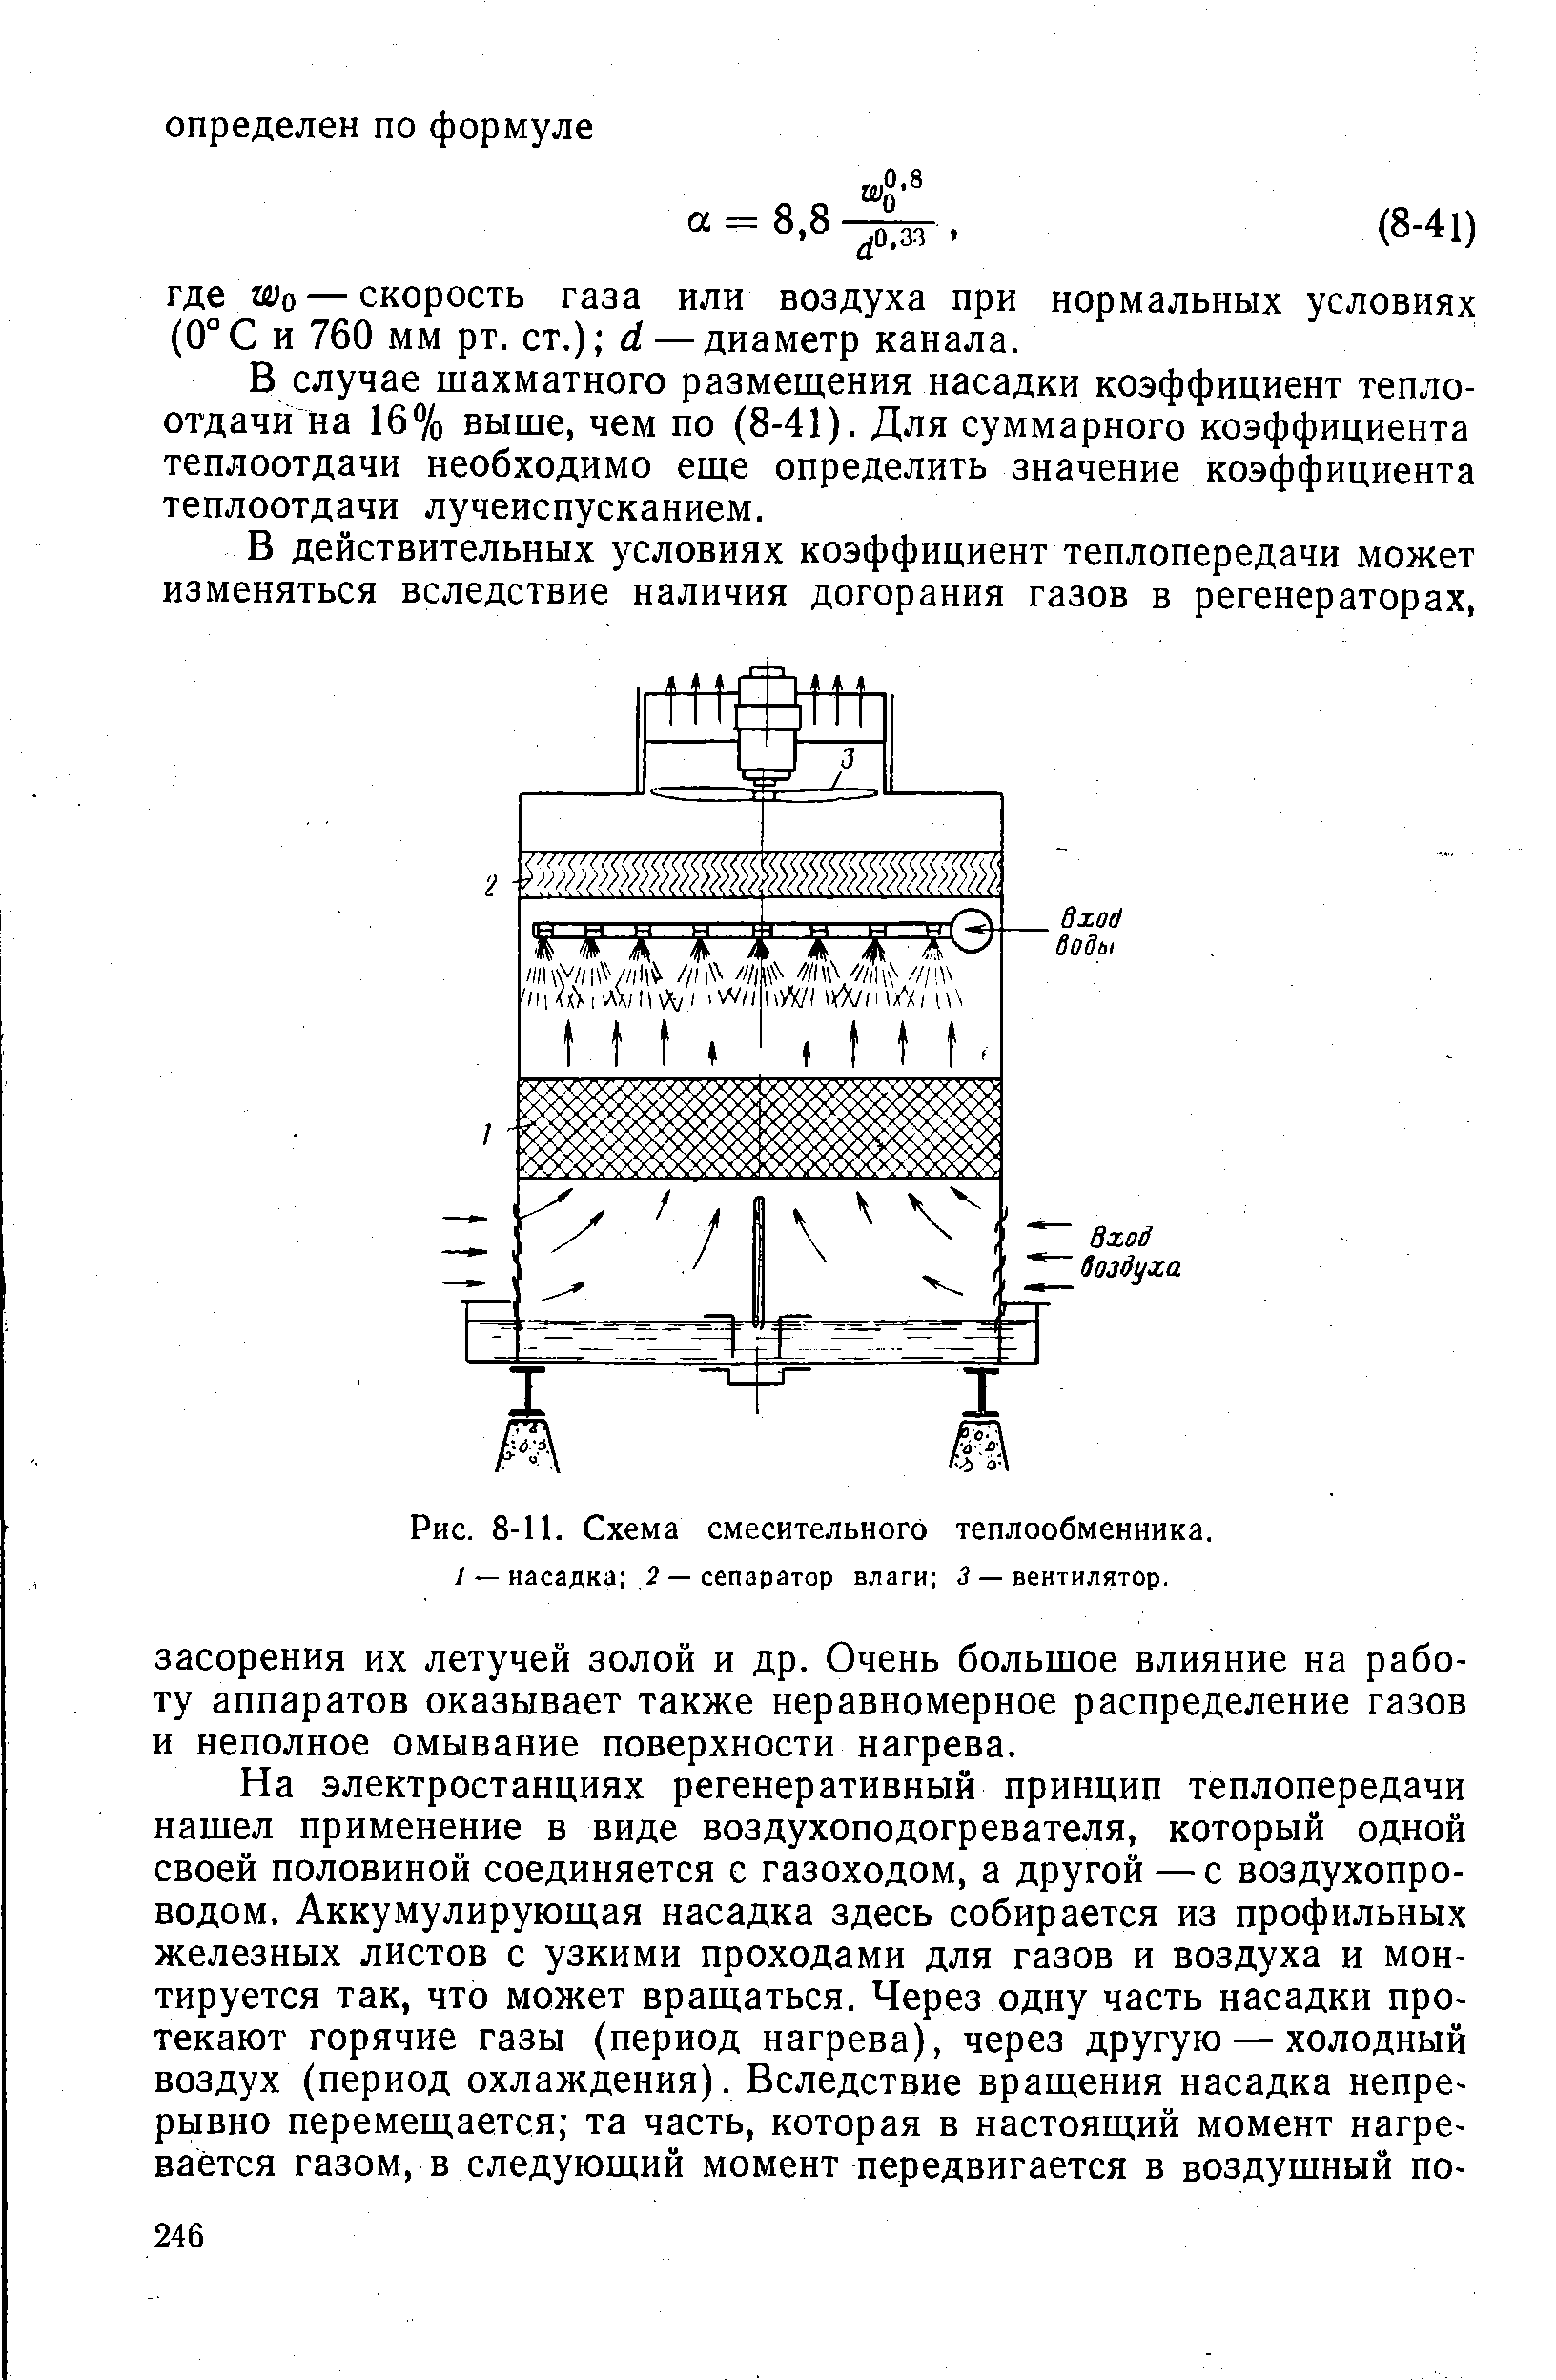 Рис. 8-11. Схема смесительного теплообменника.
